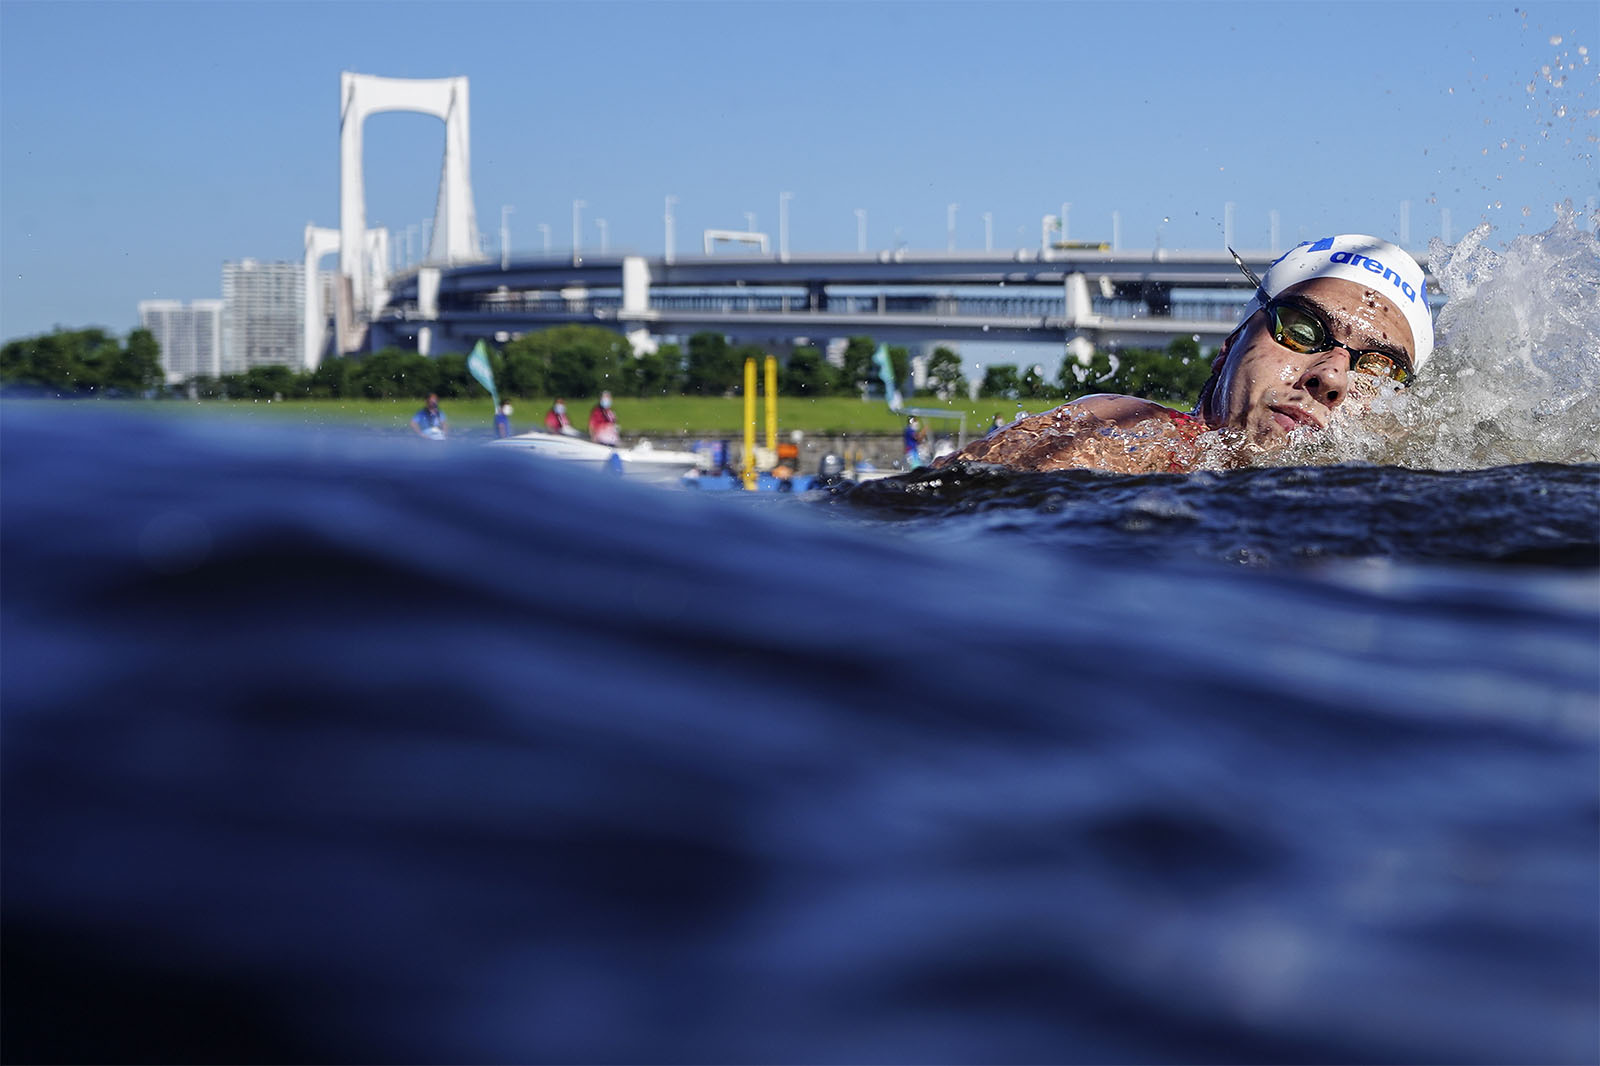 מתן רודיטי במשחה האולימפי ל-10 ק&quot;מ מים פתוחים. &quot;הצלחה של מתן העלתה את החשיפה לענף&quot; (צילום: AP/David Goldman)